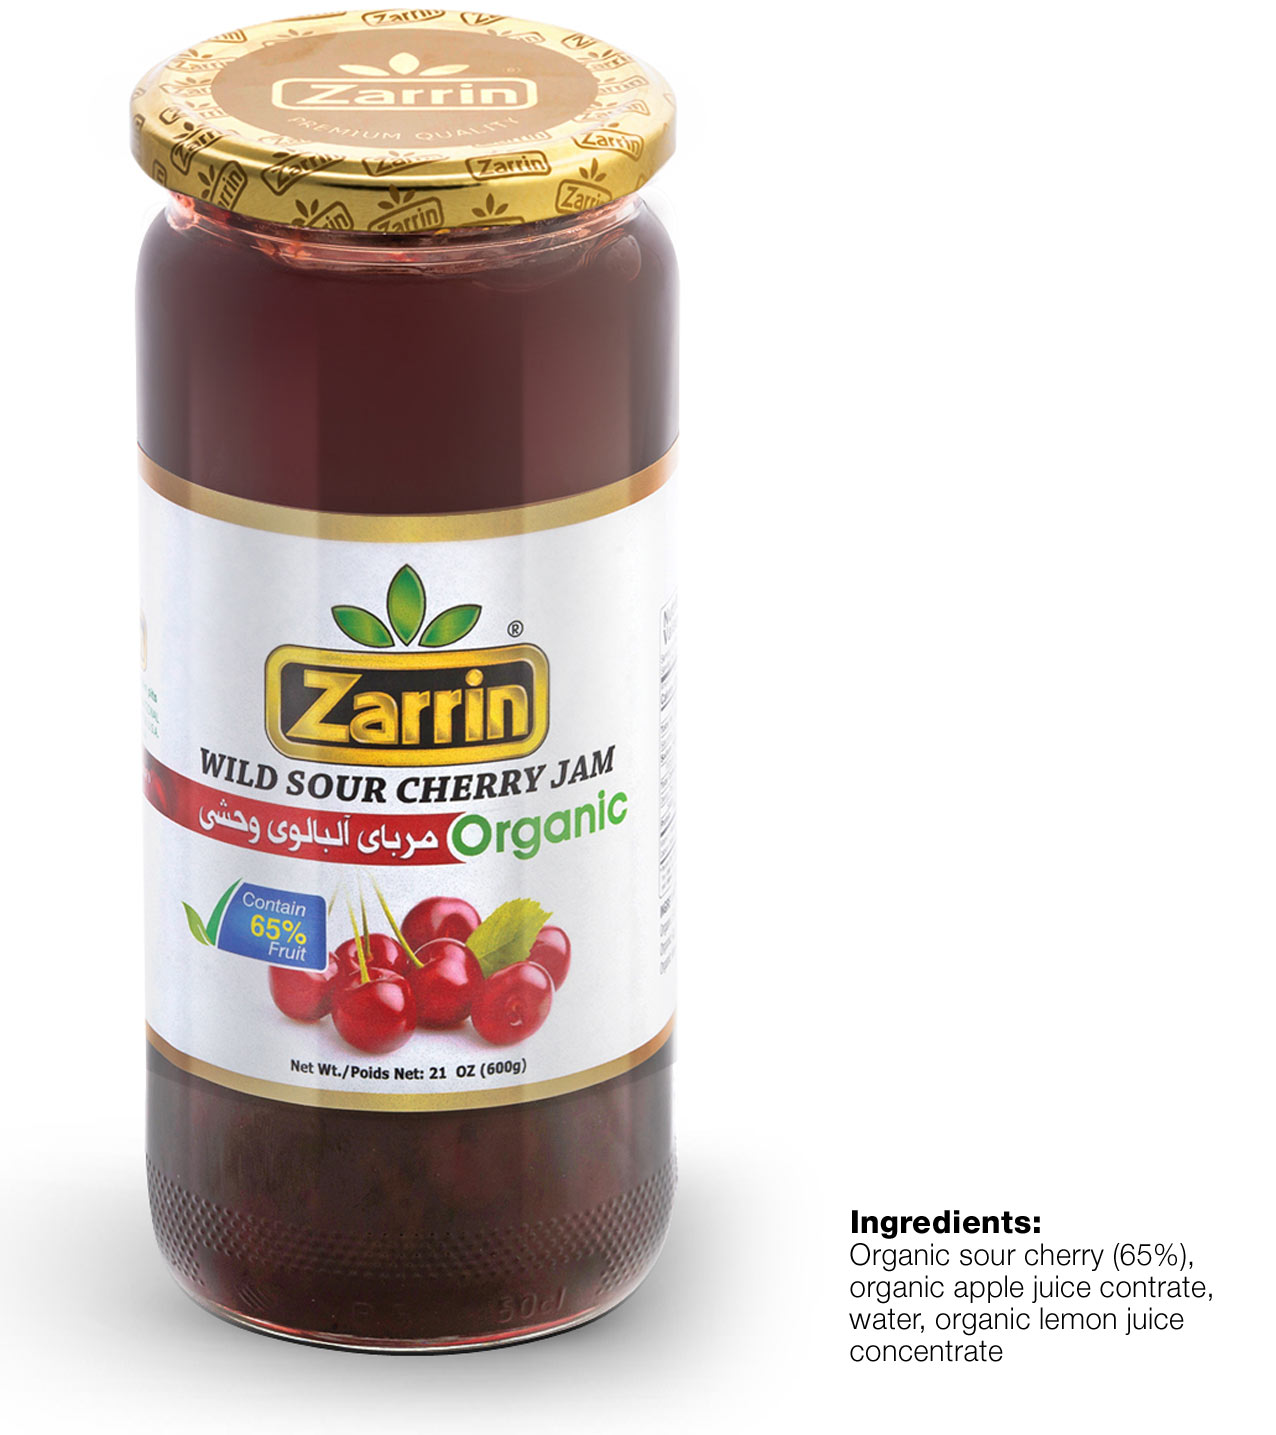 Zarrin organic wild sour cherry jam in 21 oz glass jar.